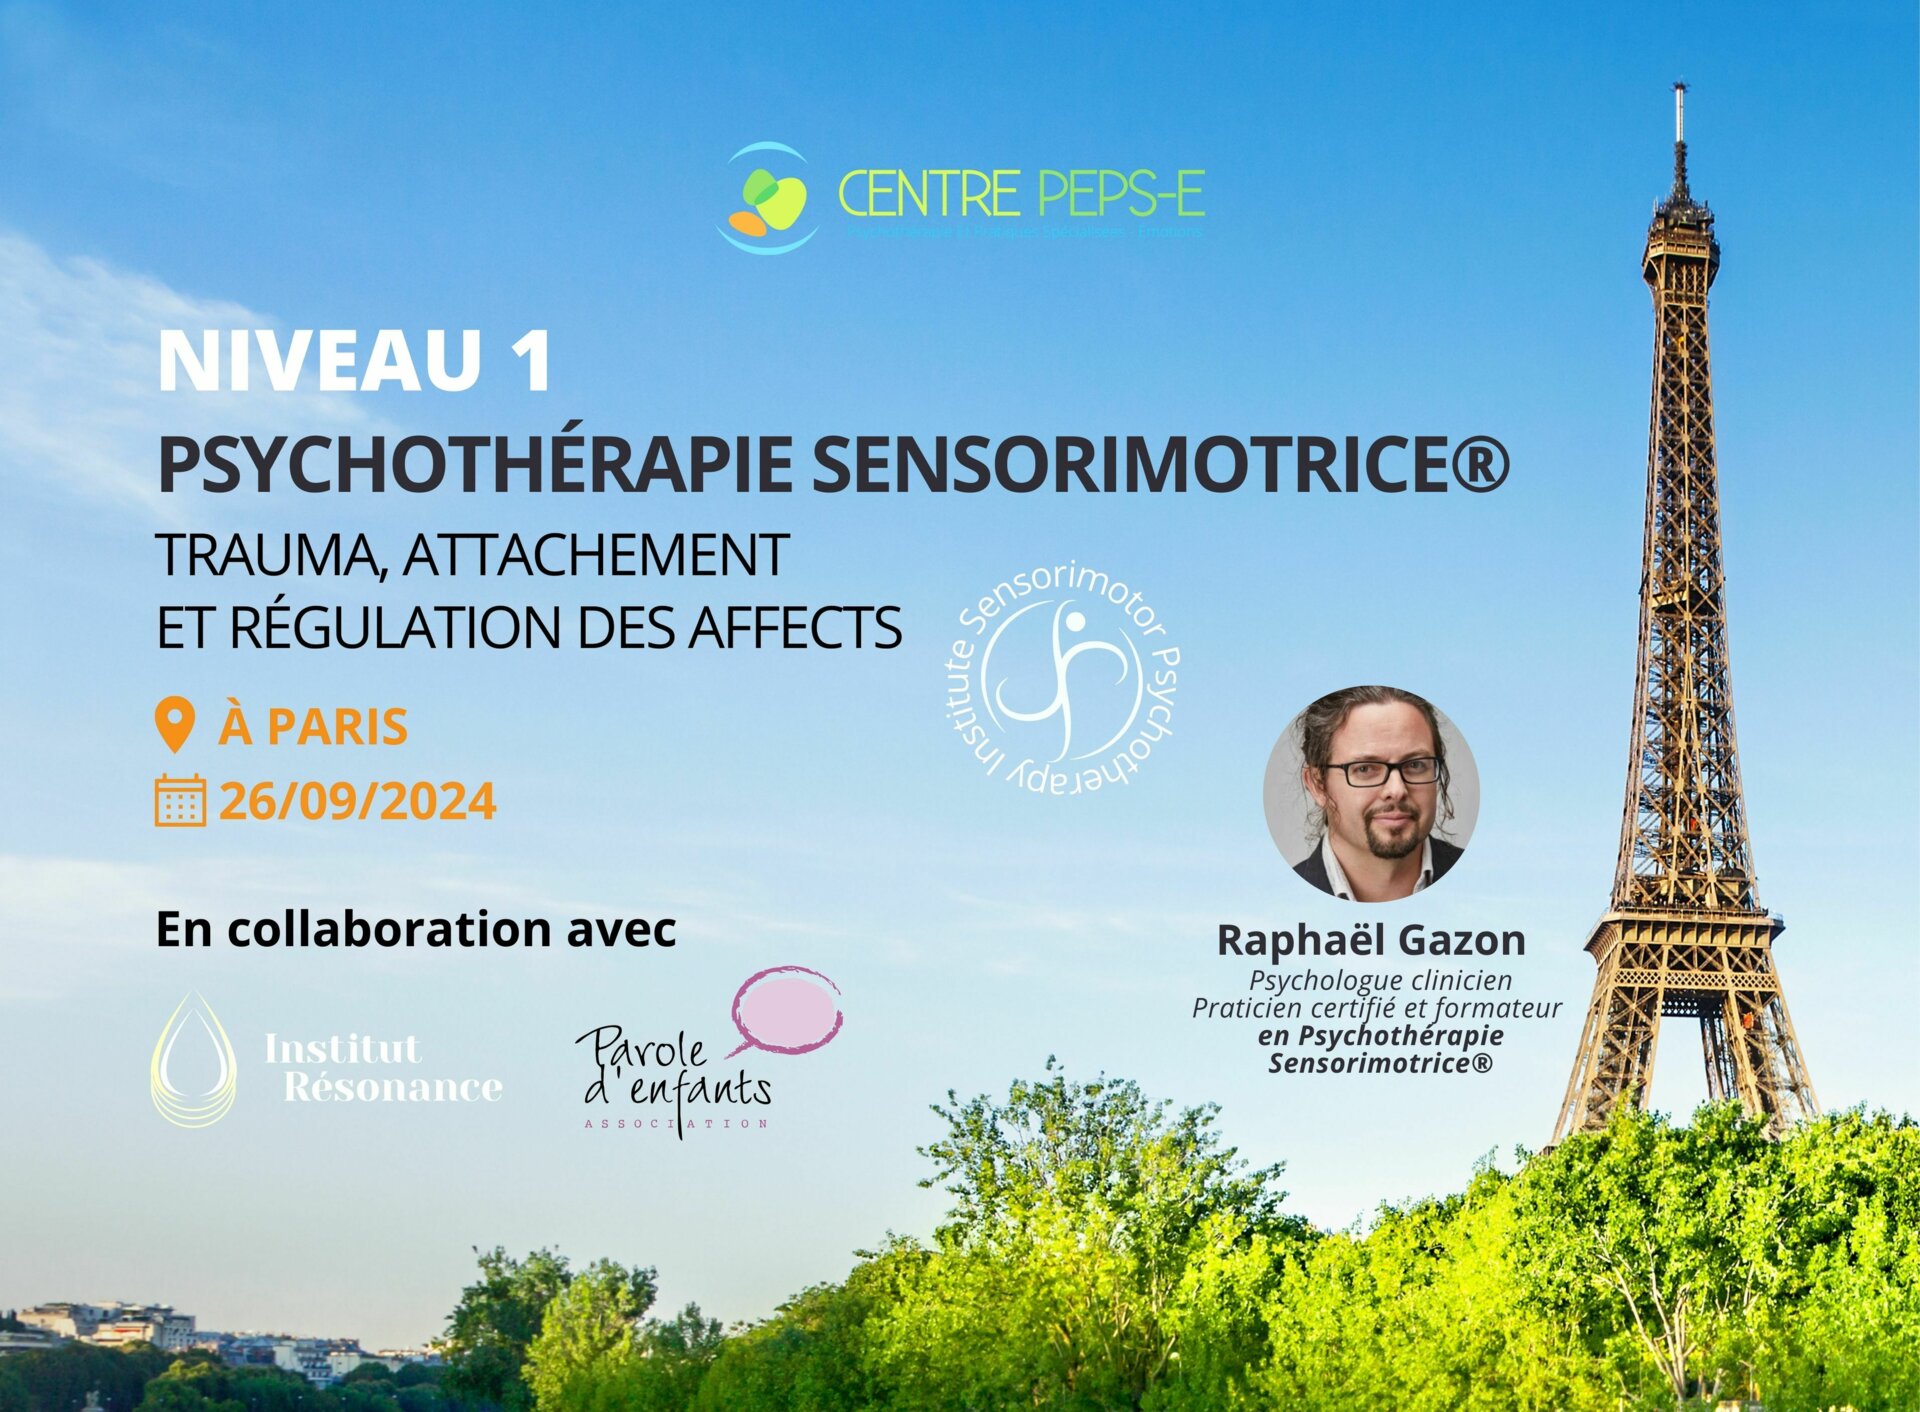 NIVEAU 1 (Paris) : Psychothérapie Sensorimotrice® pour le Traitement du Trauma